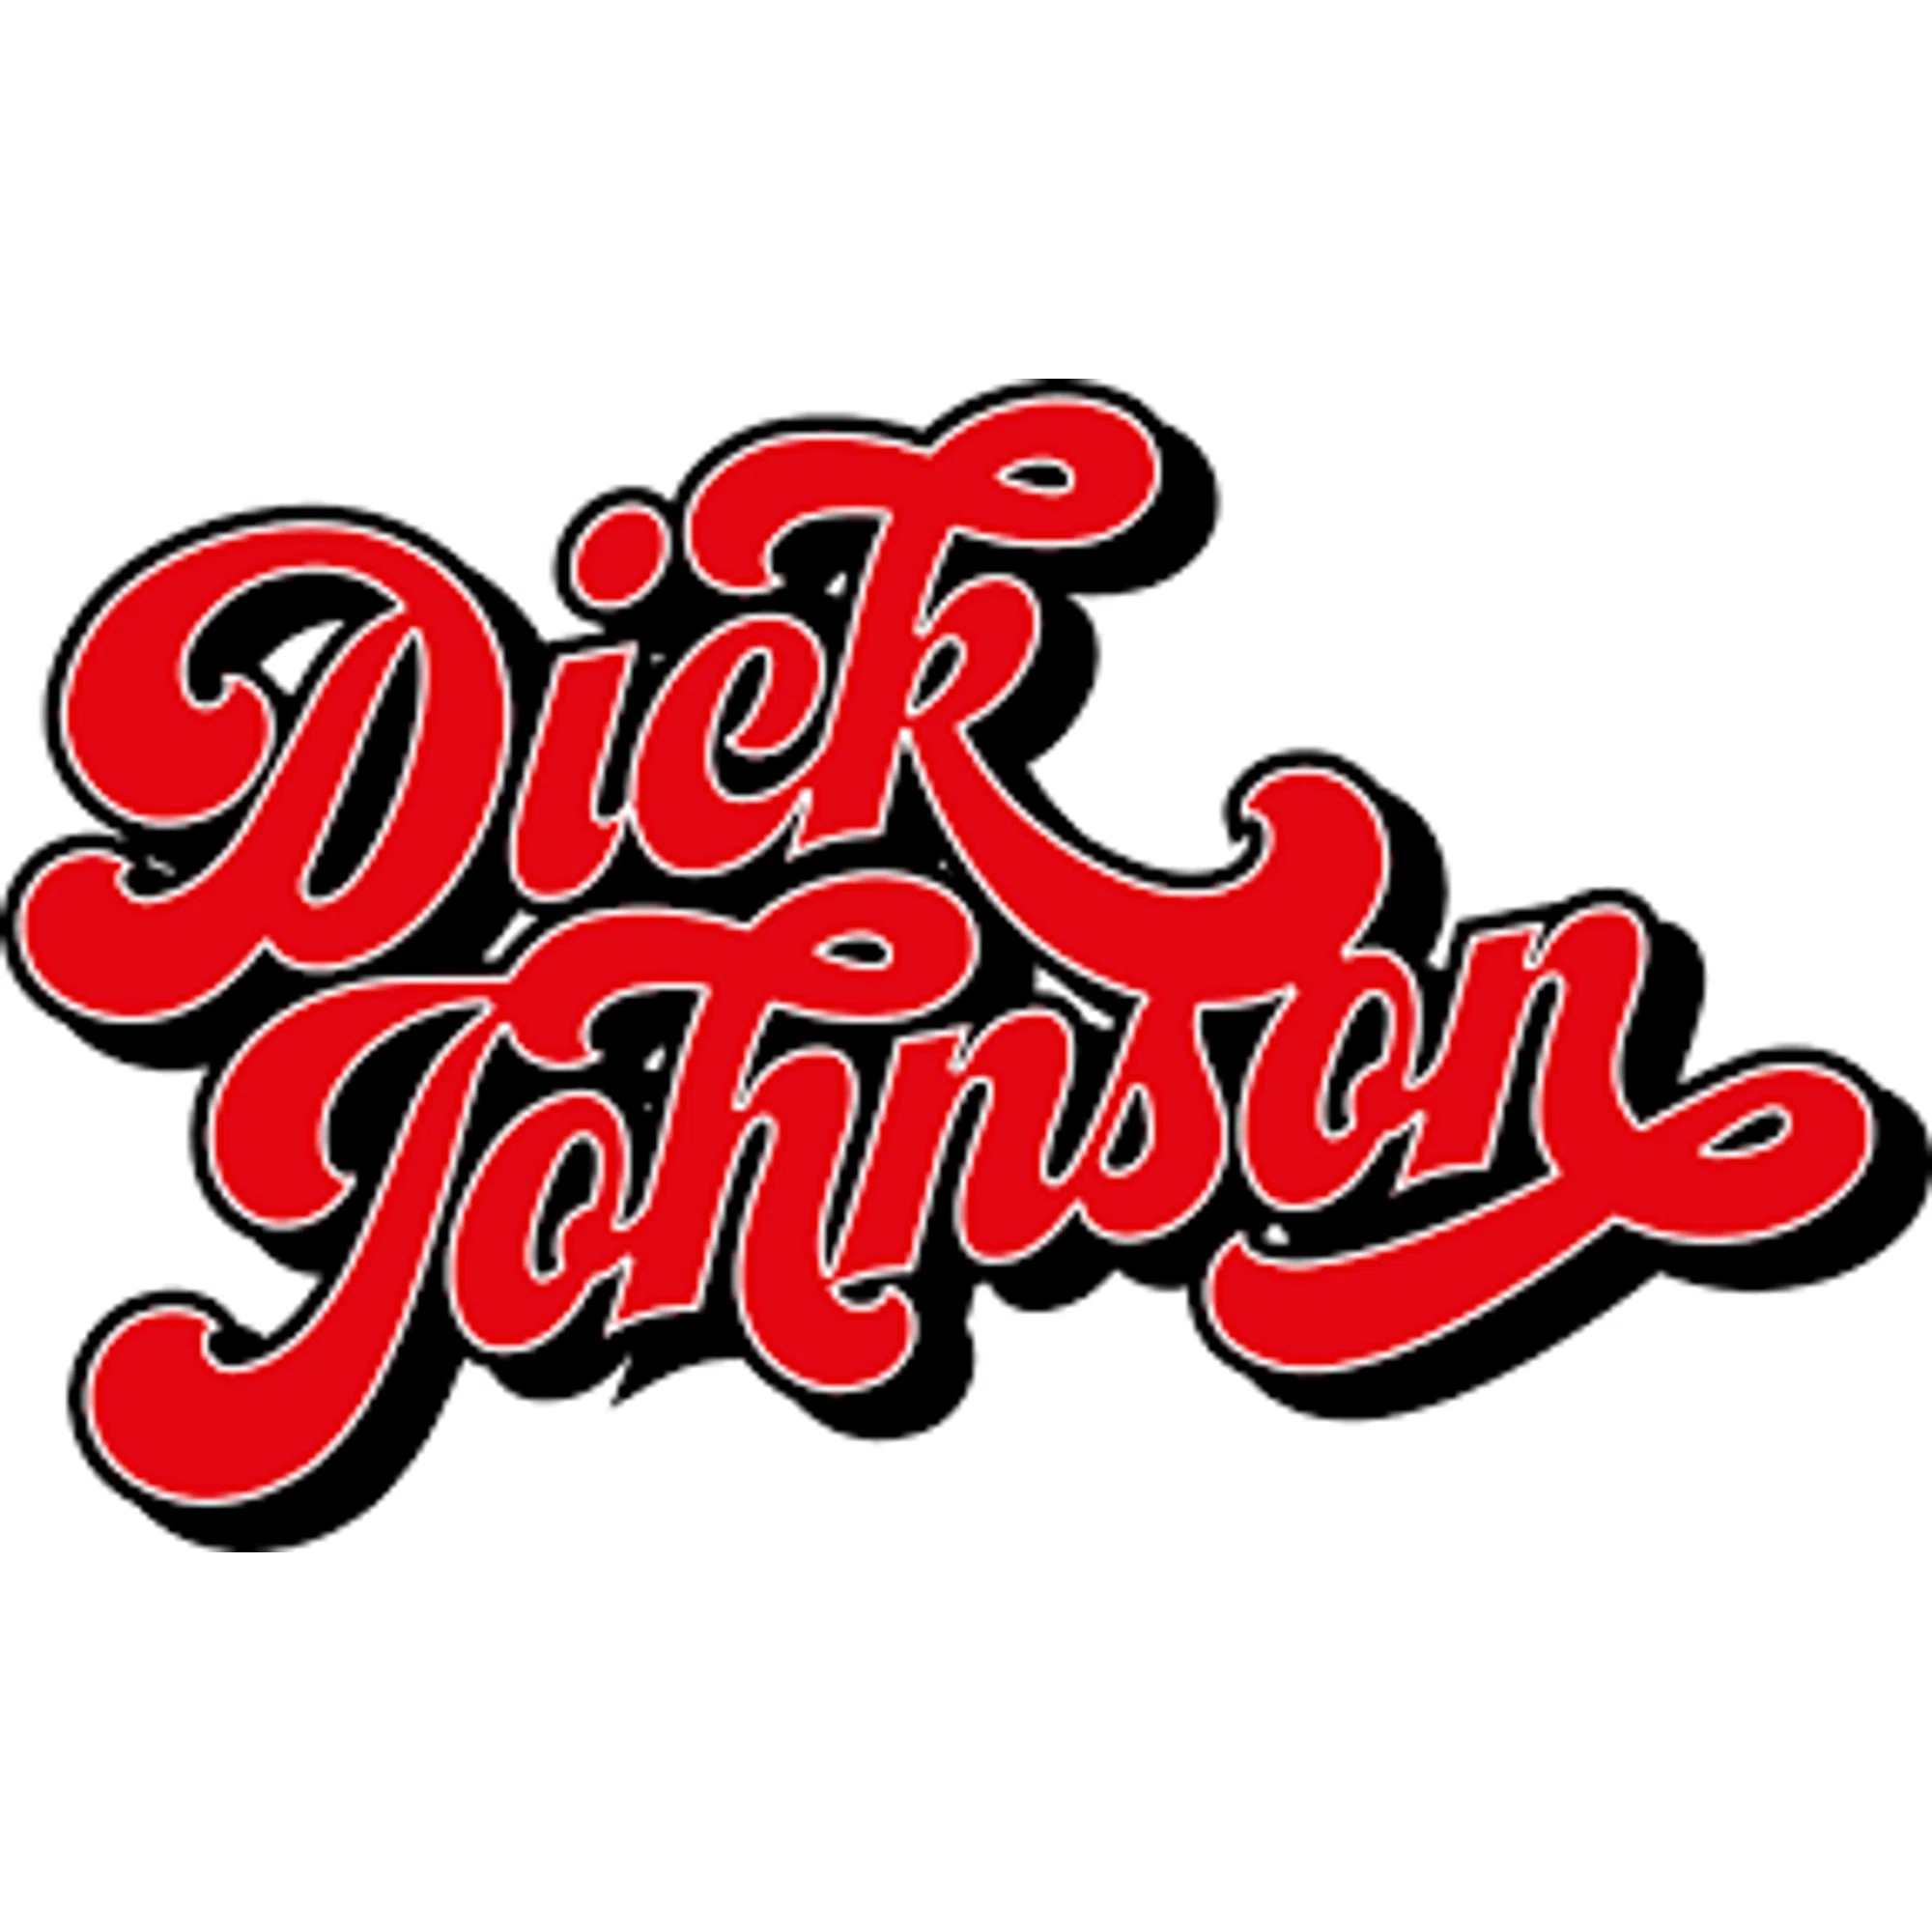 dickjohnson.store logo